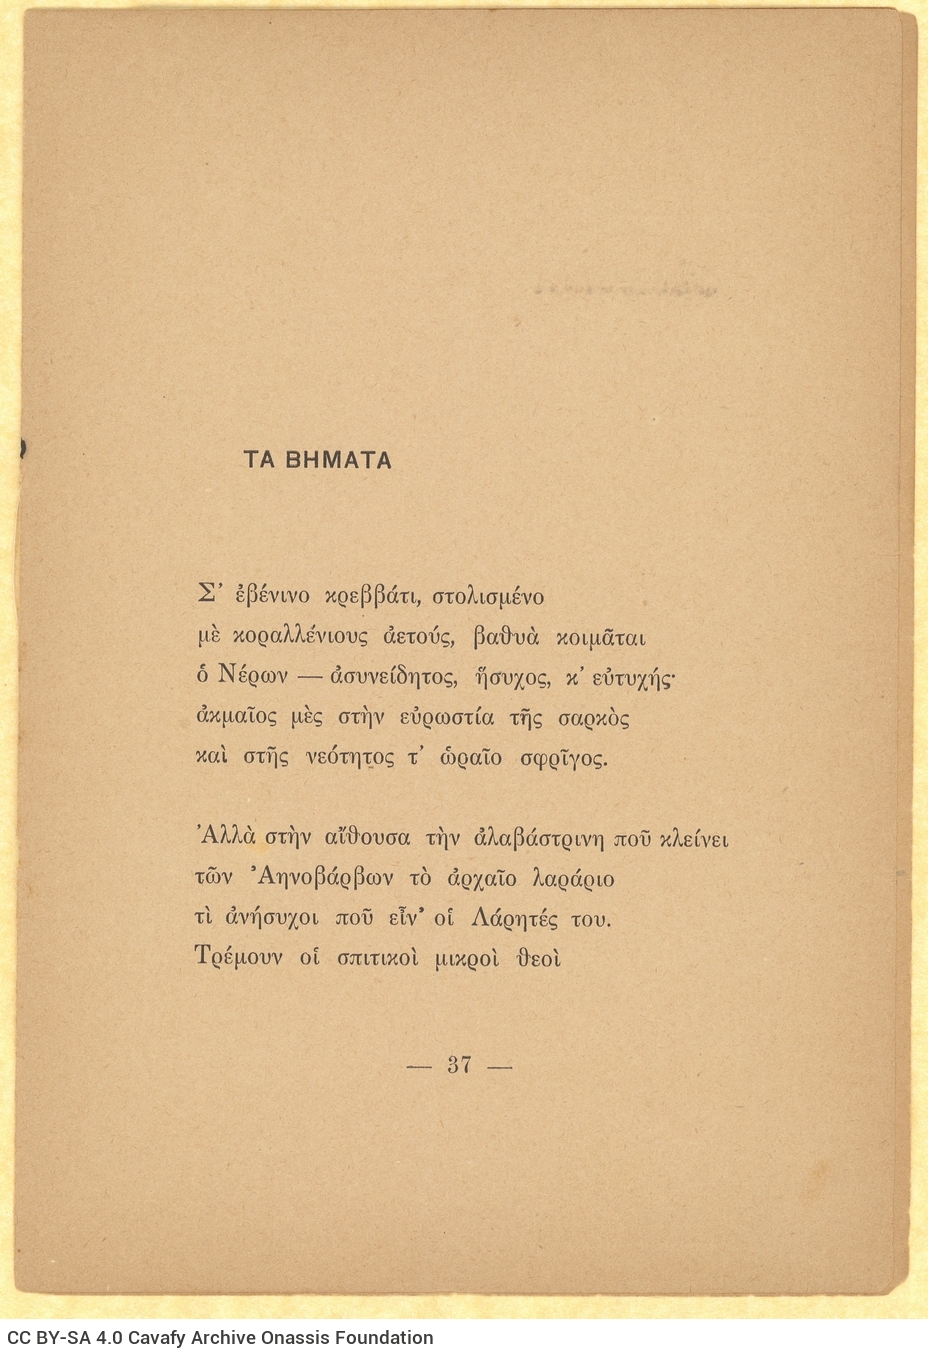 Τέσσερα φύλλα από έντυπη συλλογή ποιημάτων του Καβάφη με σελιδαρί�